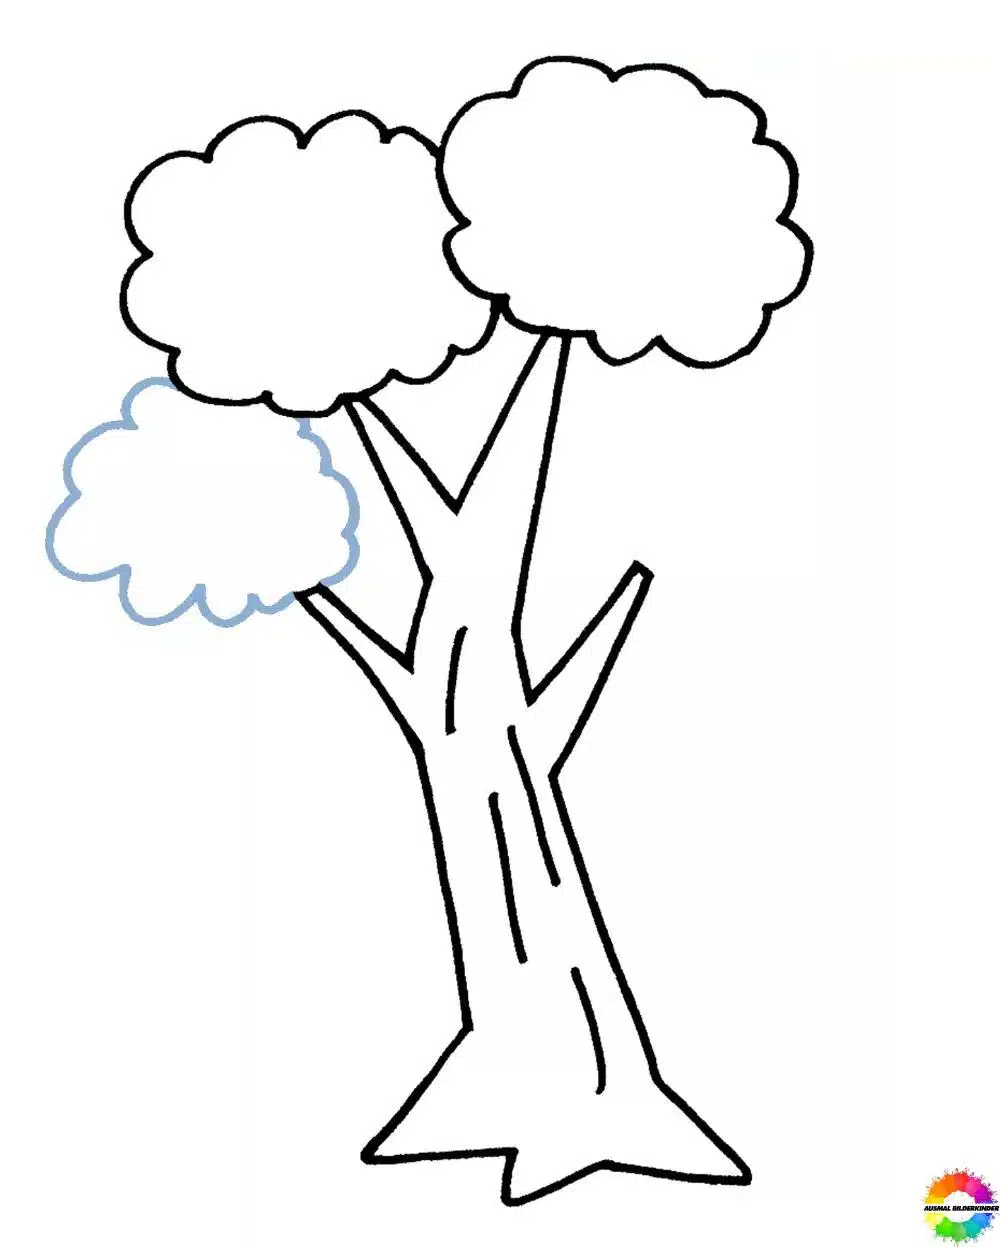 Baum zeichnen einfach - Schritt 8